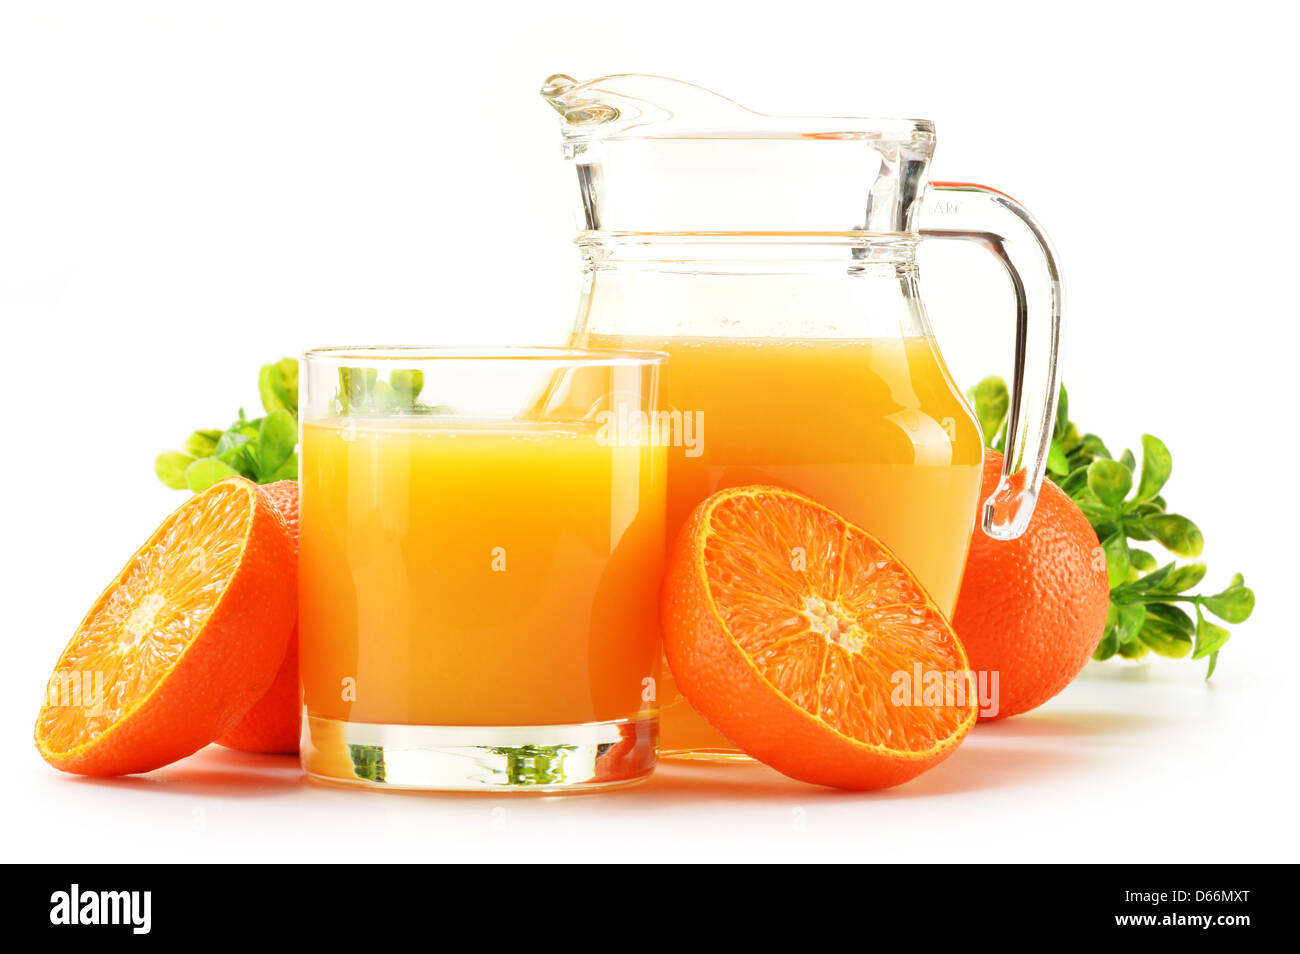 https://c8.alamy.com/comp/D66MXT/composition-with-glass-and-jug-of-orange-juice-D66MXT.jpg